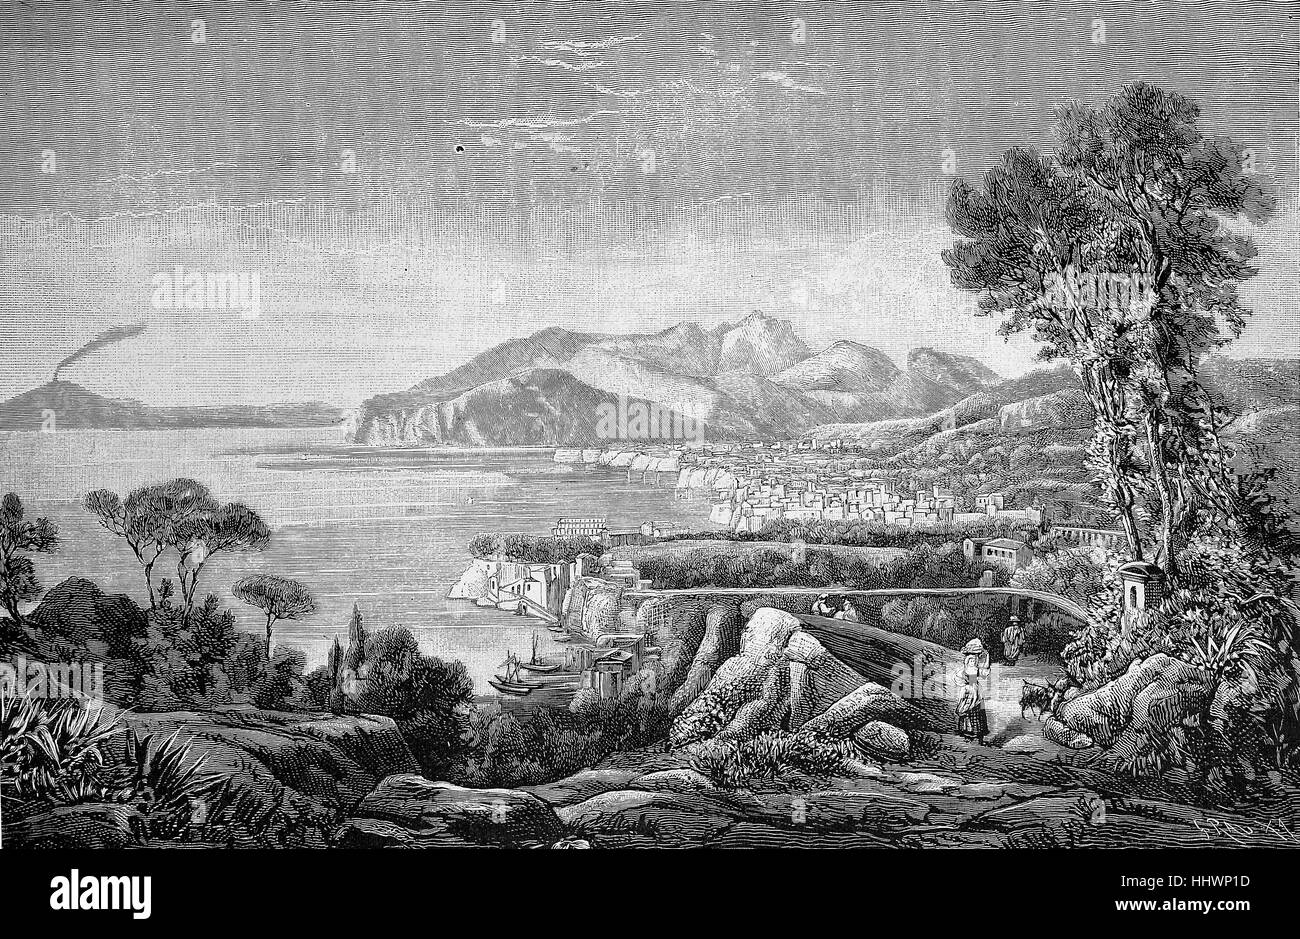 Vista della città di Sorrento sul golfo di Napoli, Italia, immagine storica o illustrazione, pubblicato 1890, digitale migliorata Foto Stock